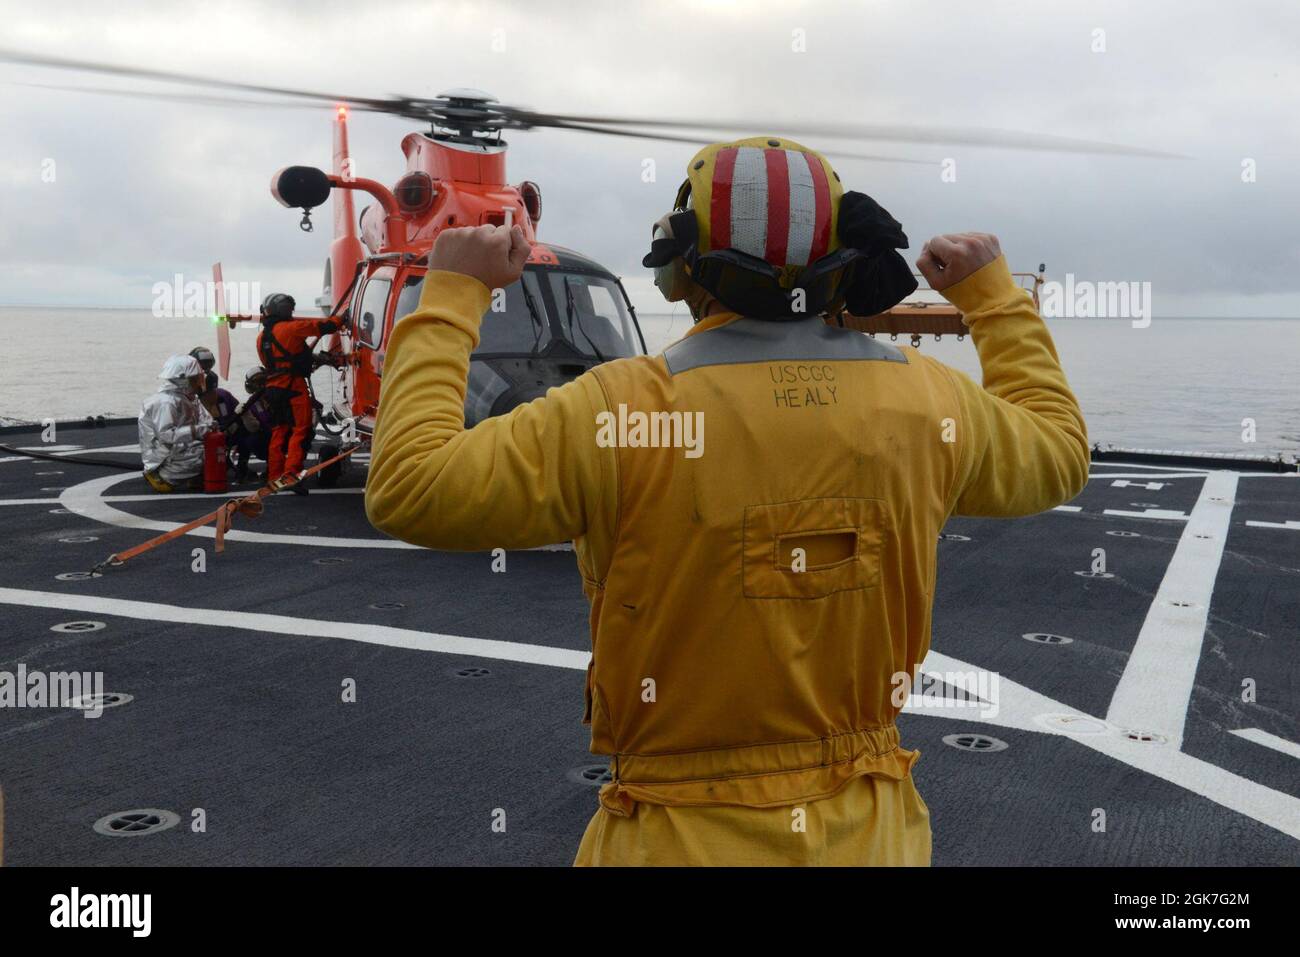 ENS. Ryan Dunkle, membro dell'equipaggio della Guardia Costiera Cutter Healy (WAGB 20), trasmette i segnali a un team di rifornimento mentre rifornisce un elicottero Air Station Kodiak MH-65 Dolphin durante le operazioni di addestramento congiunto al largo della costa dell'Alaska durante lo spiegamento artico di Healy il 25 agosto 2021. Gli addetti al segnale di atterraggio sono responsabili della comunicazione con l'equipaggio e i membri dell'equipaggio di taglio durante le operazioni di volo. Foto Stock